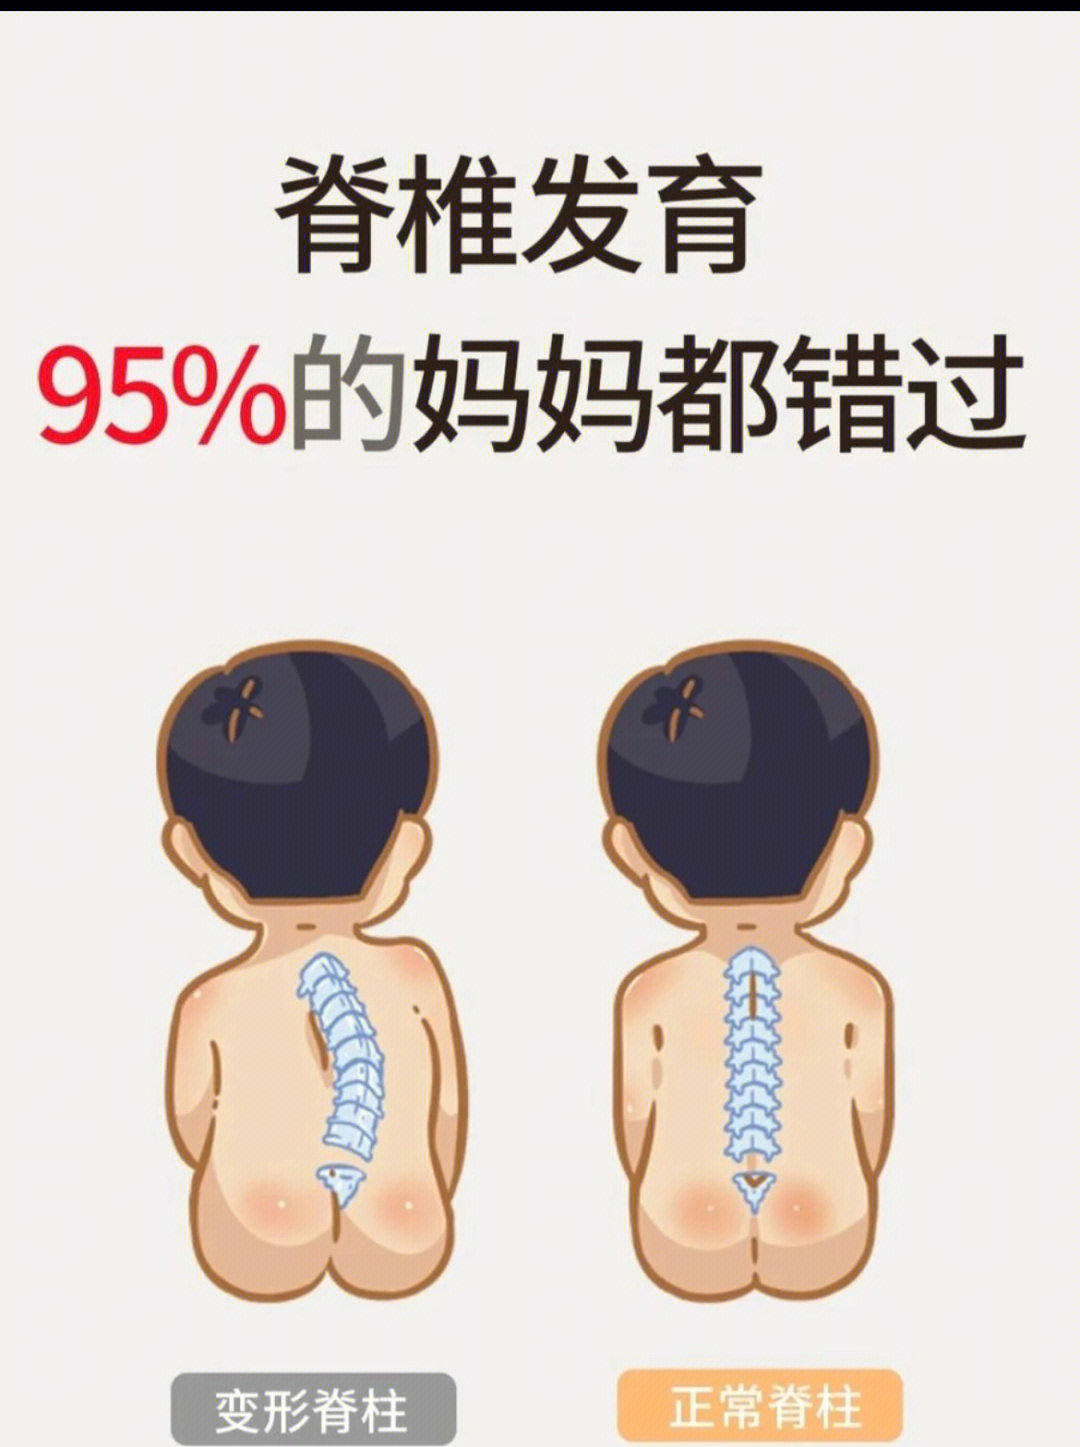 儿童脊柱发育过程图解图片